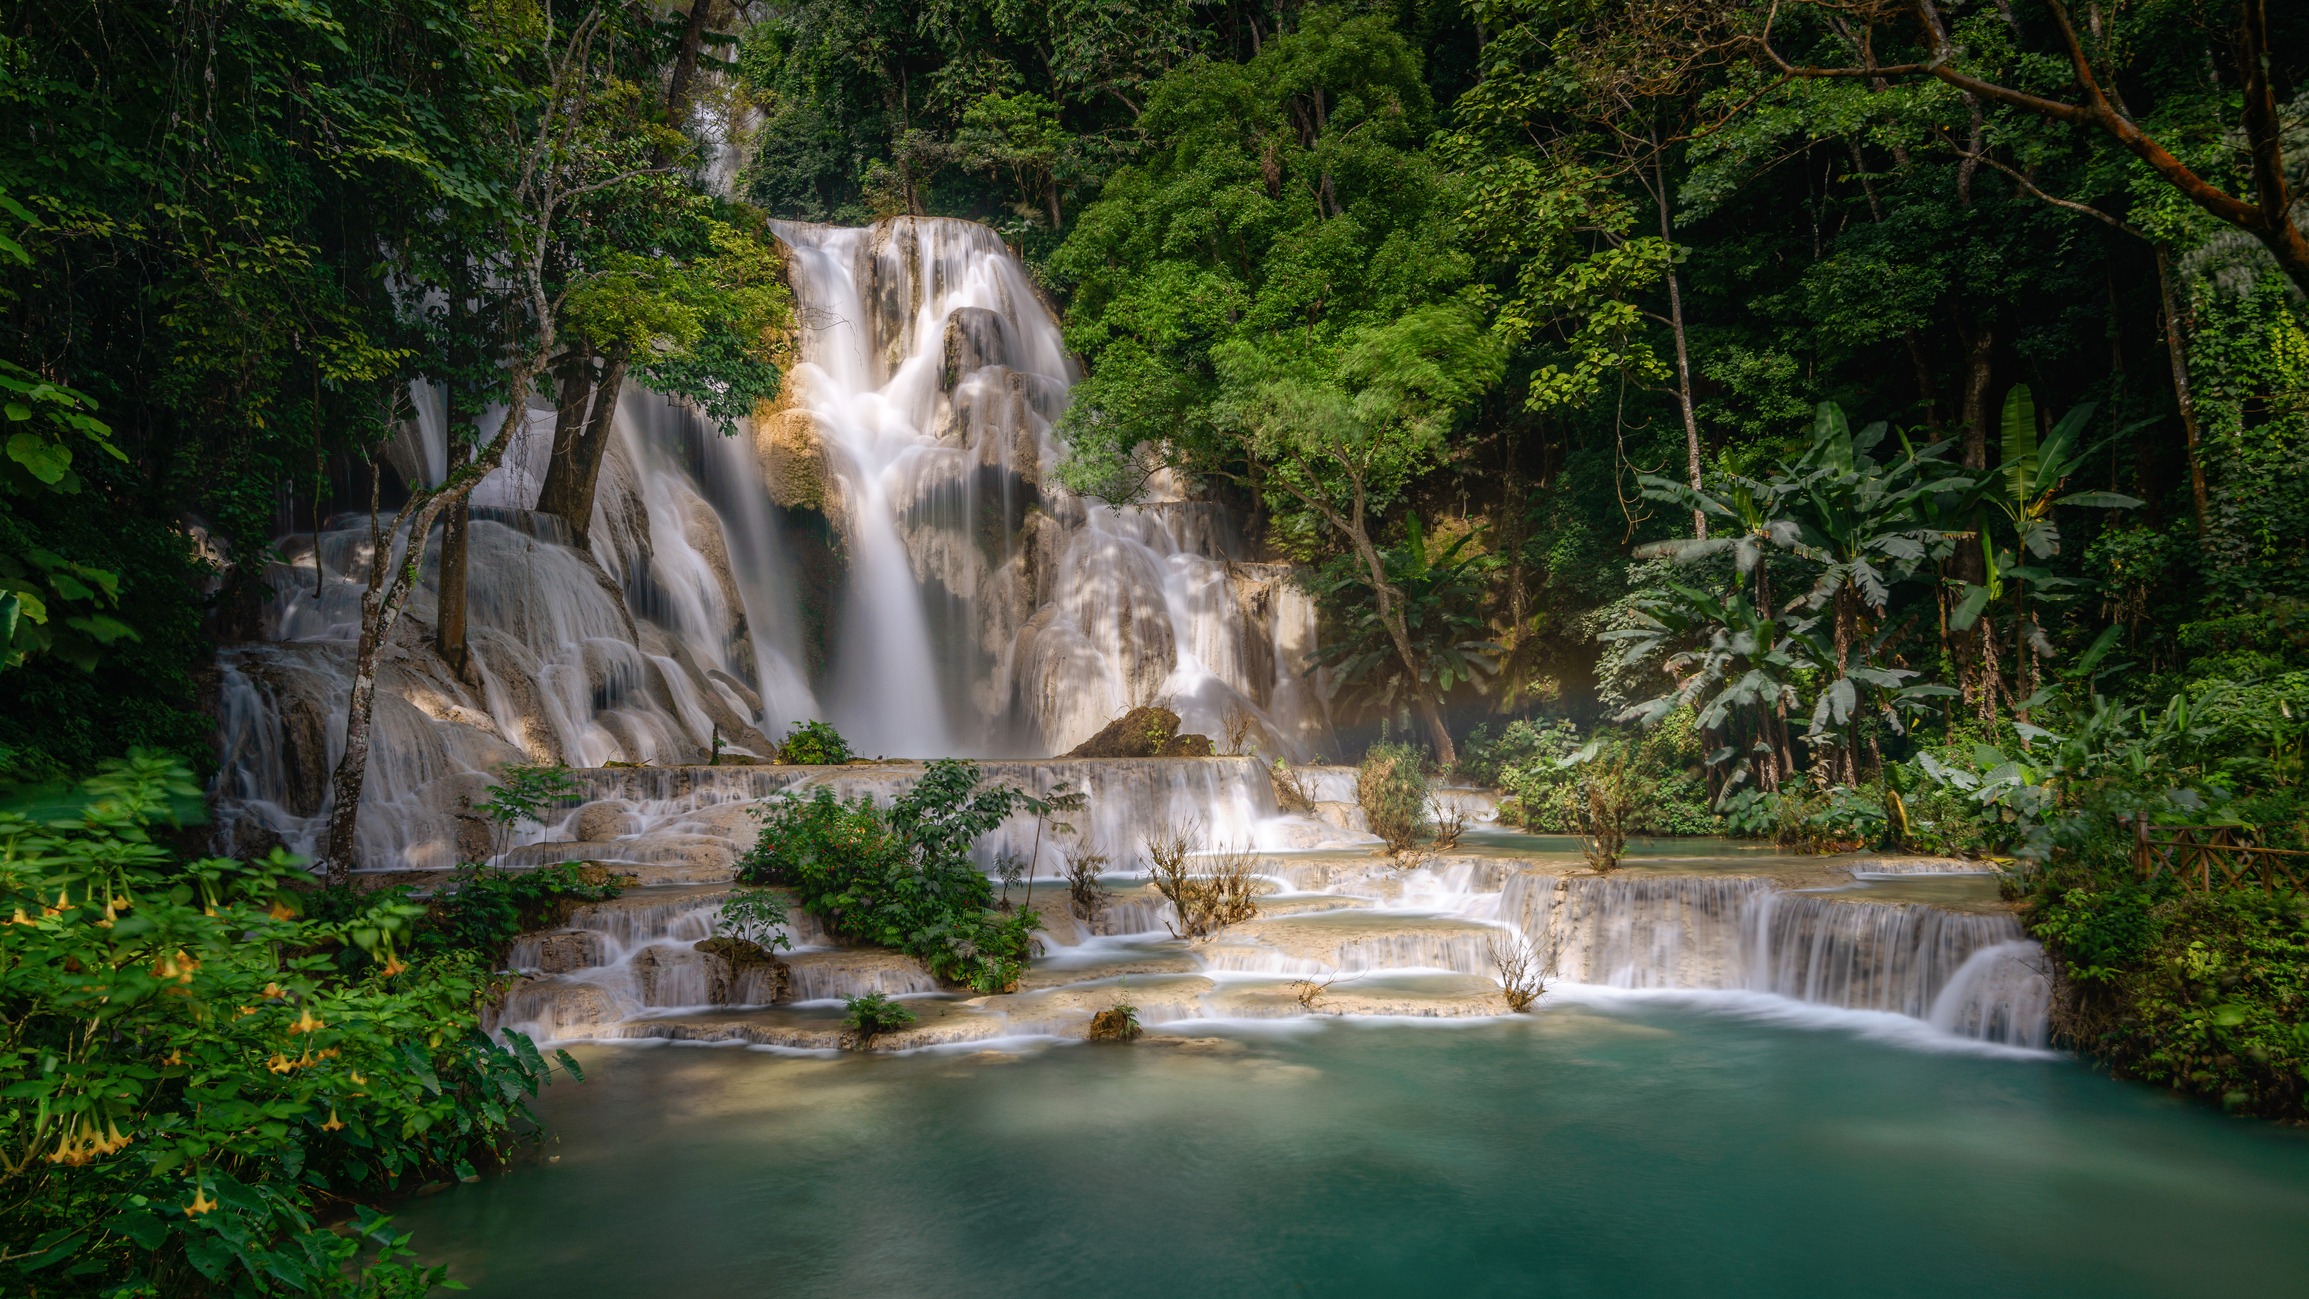 Long-exposure scene of Kuangsi Waterfall (Tat Kuang si) in Luang Prabang, Laos.